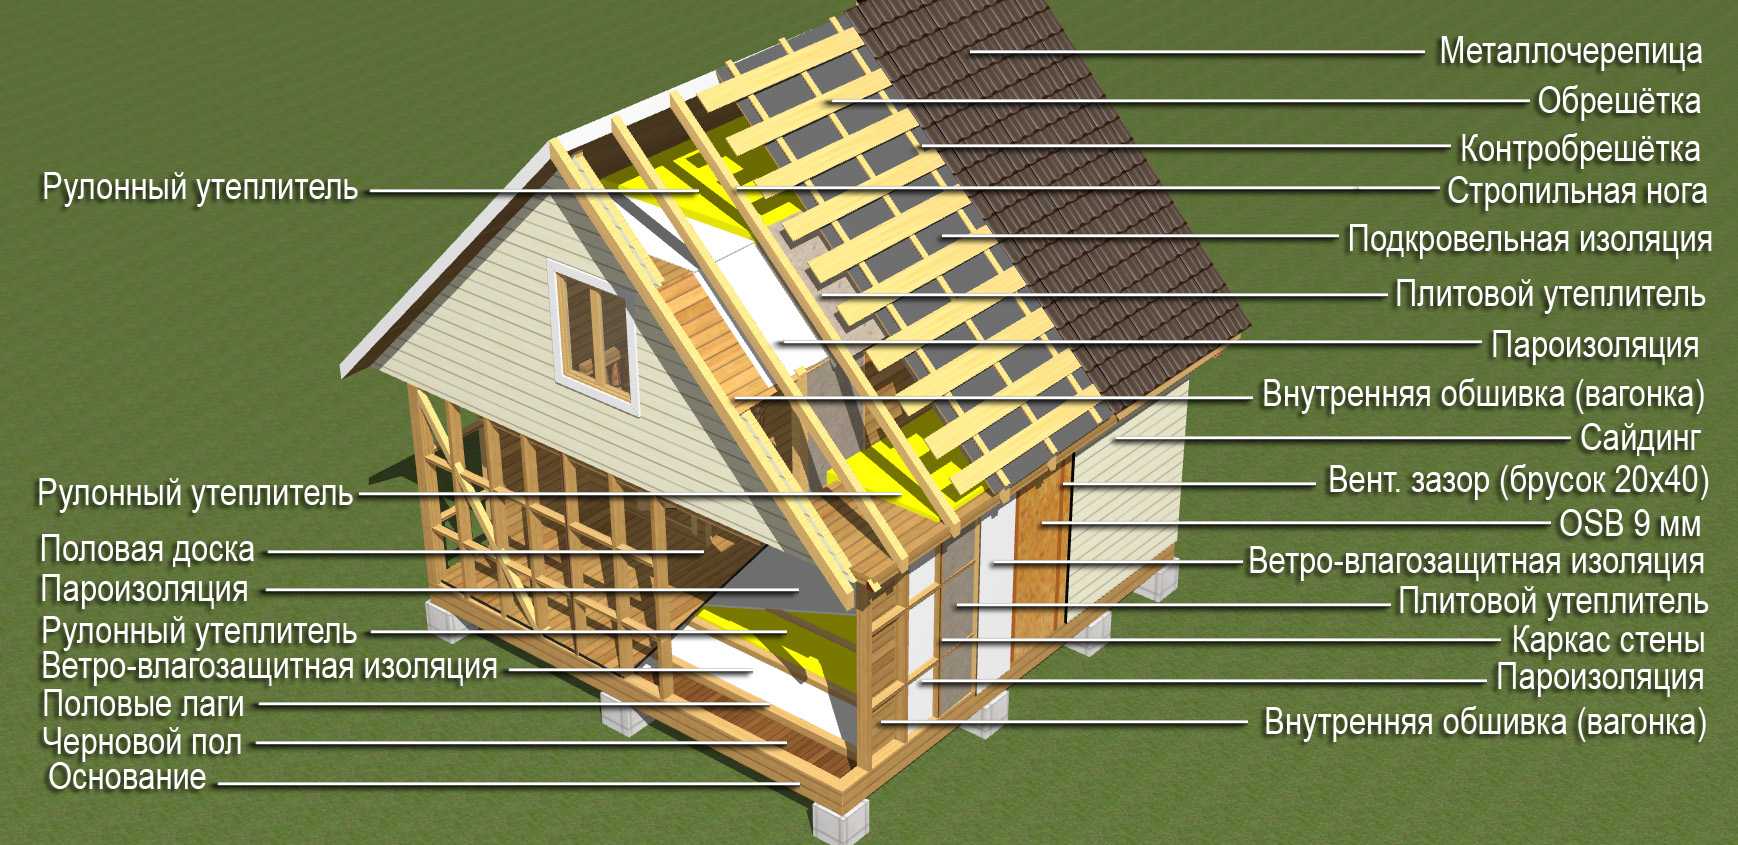 Технология и этапы строительства каркасных домов